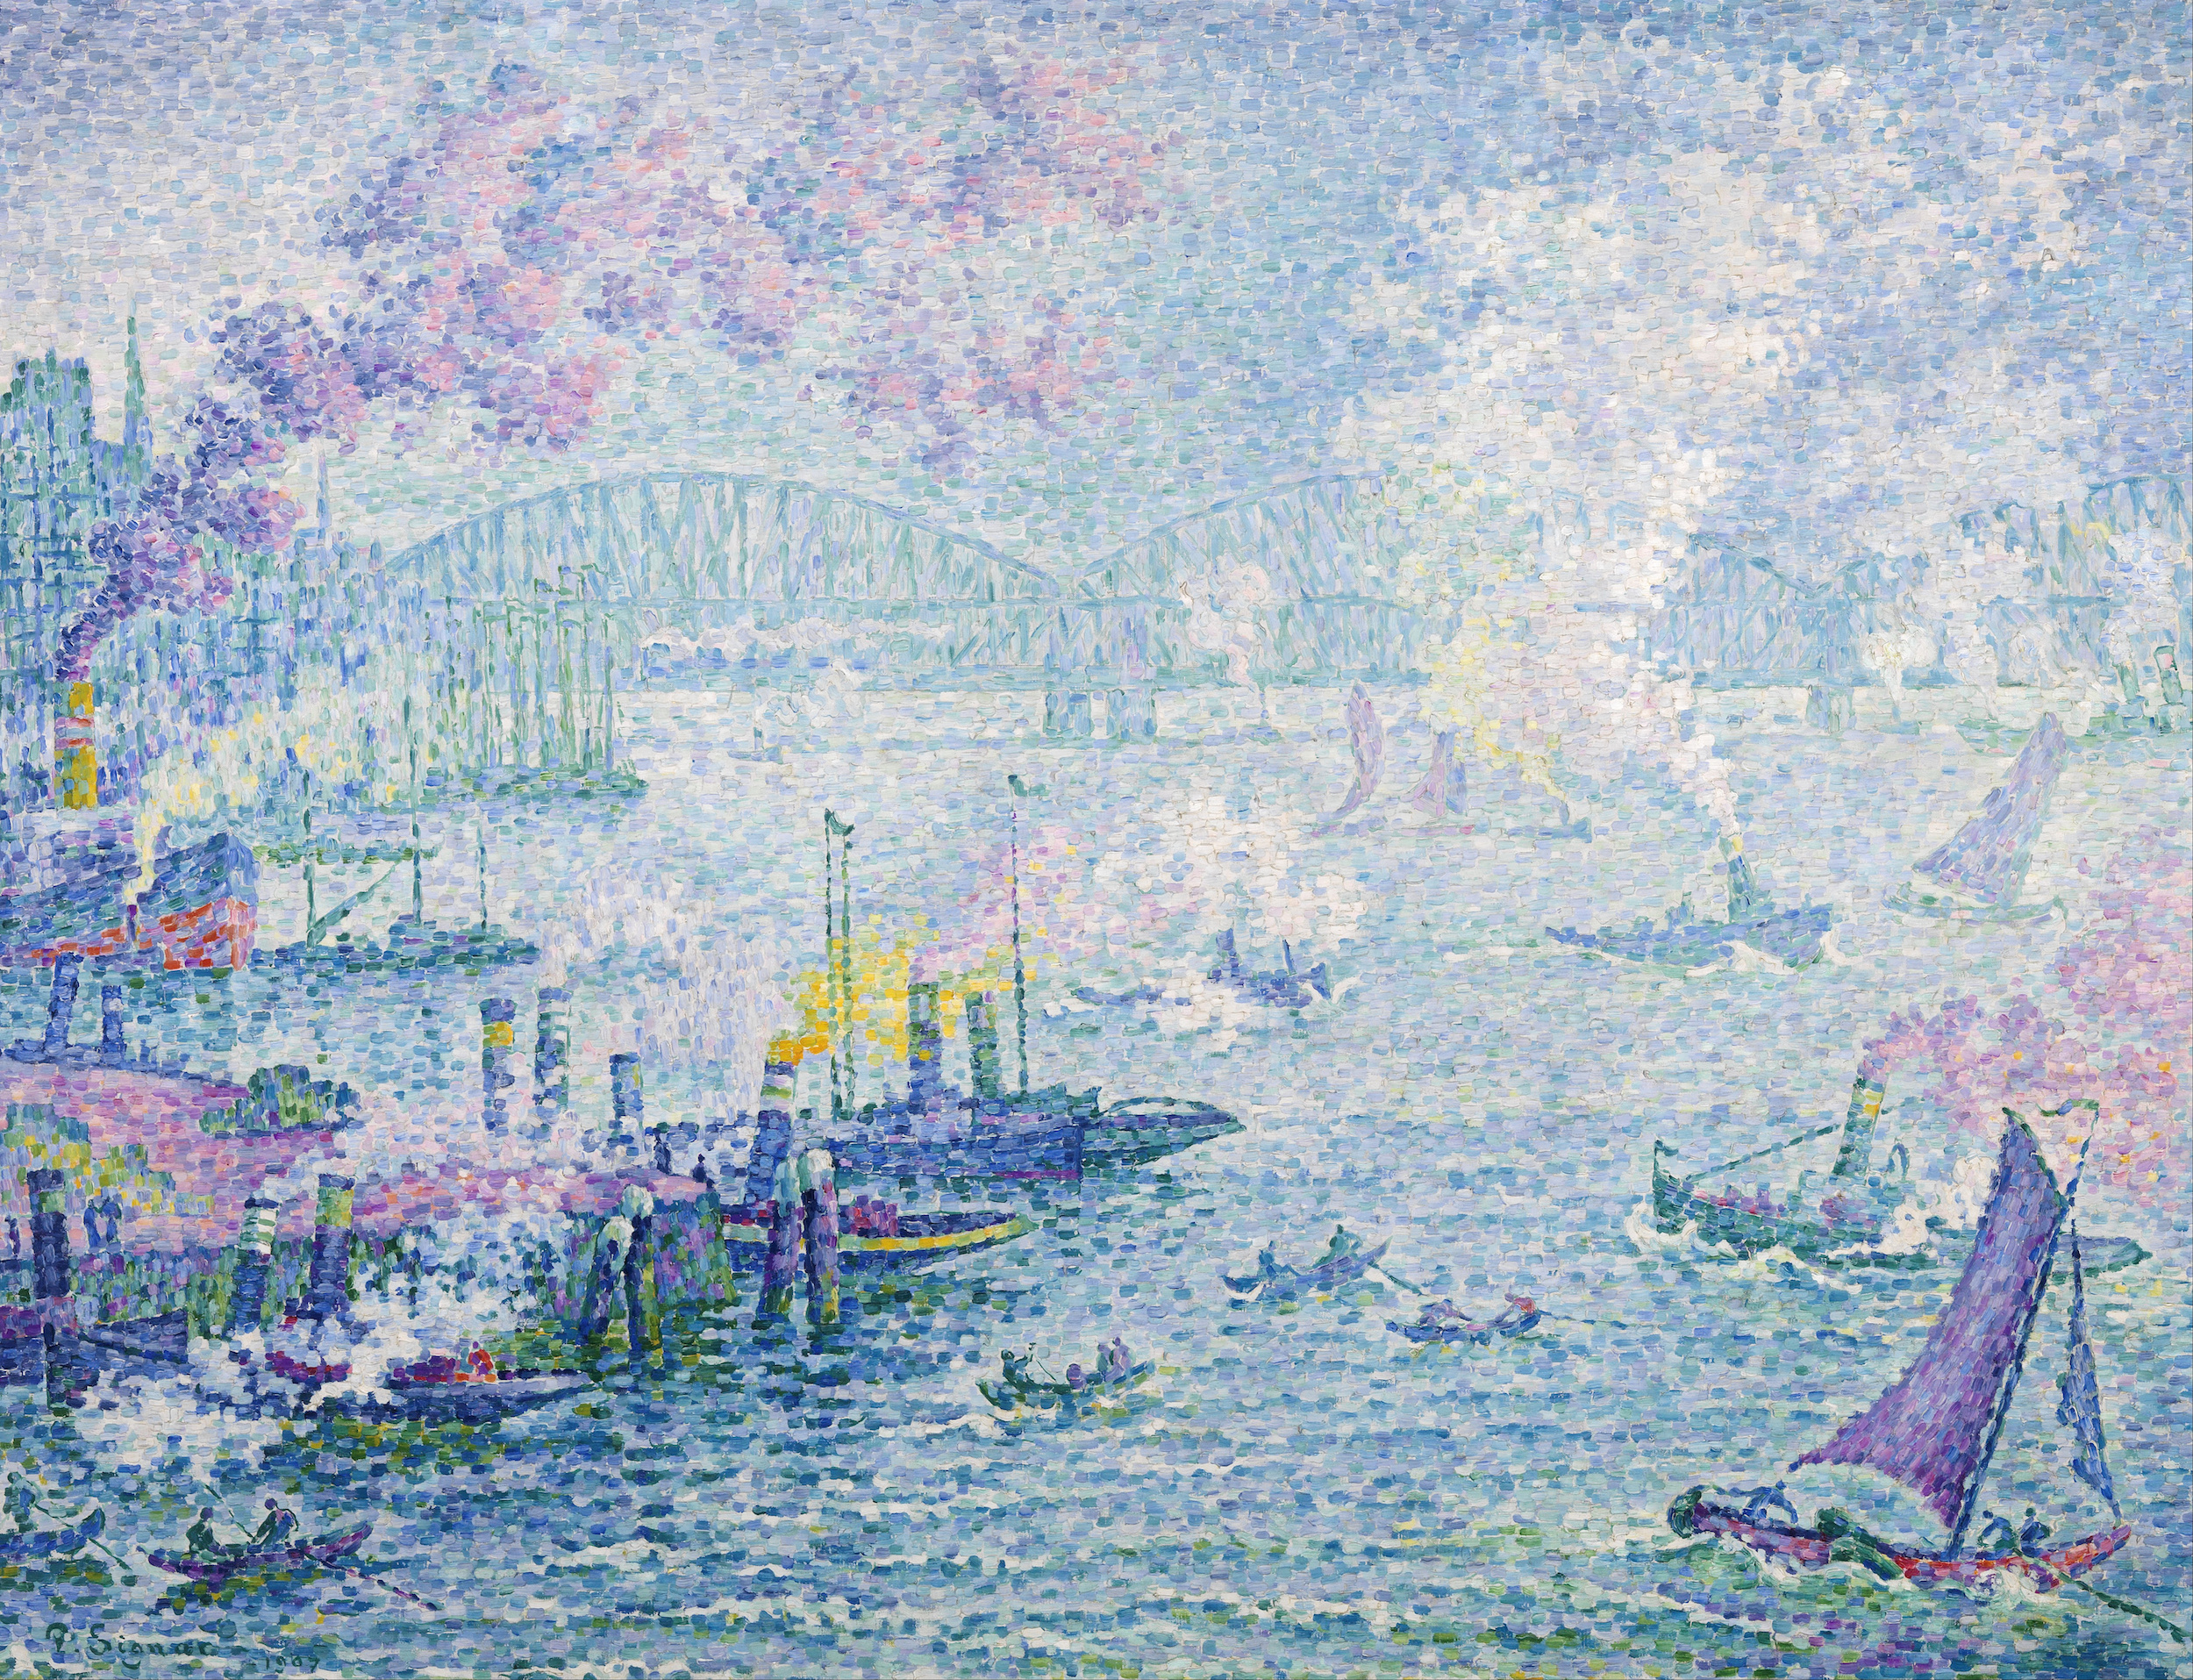 Rotterdamský přístav by Paul Signac - 1907 - 114 x 87 cm 